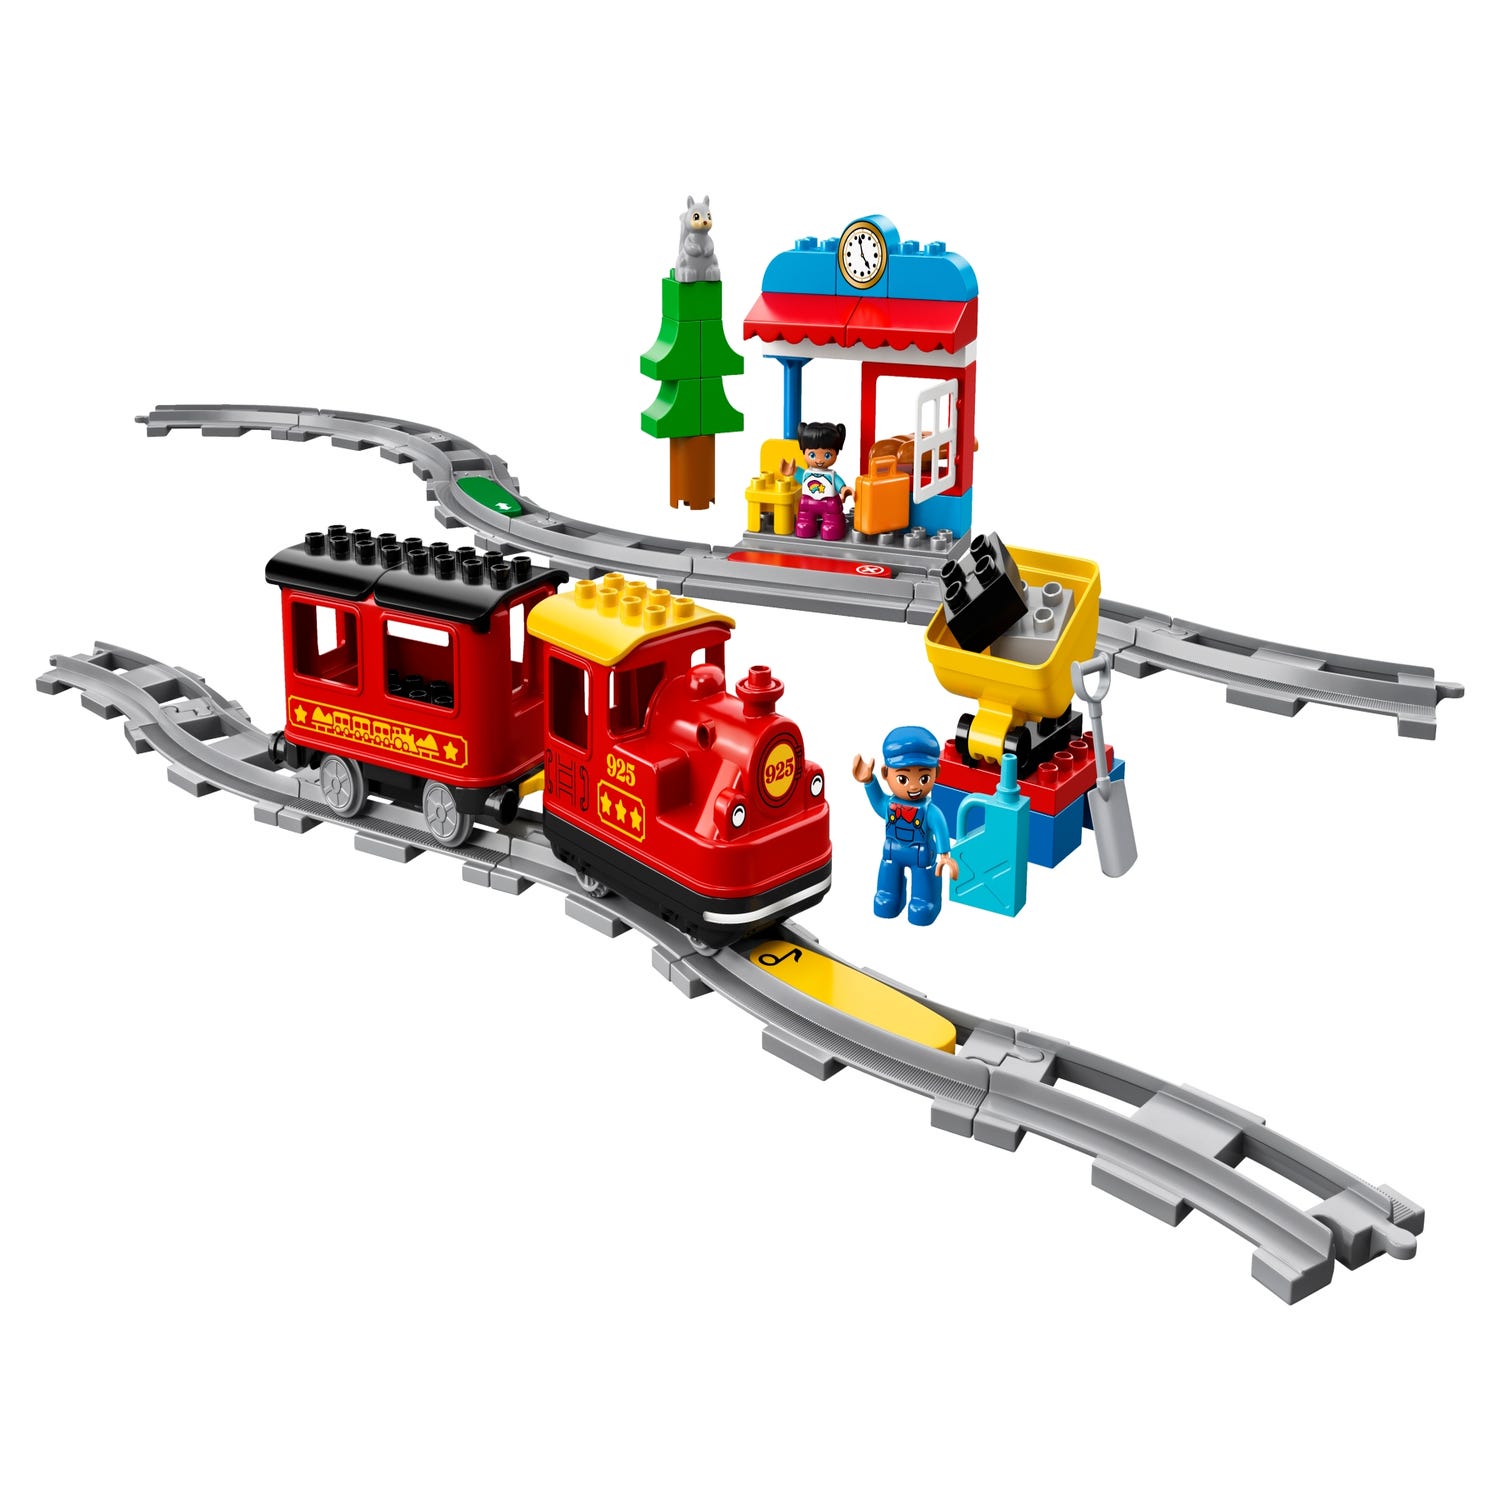 Lego Duplo : Train à vapeur